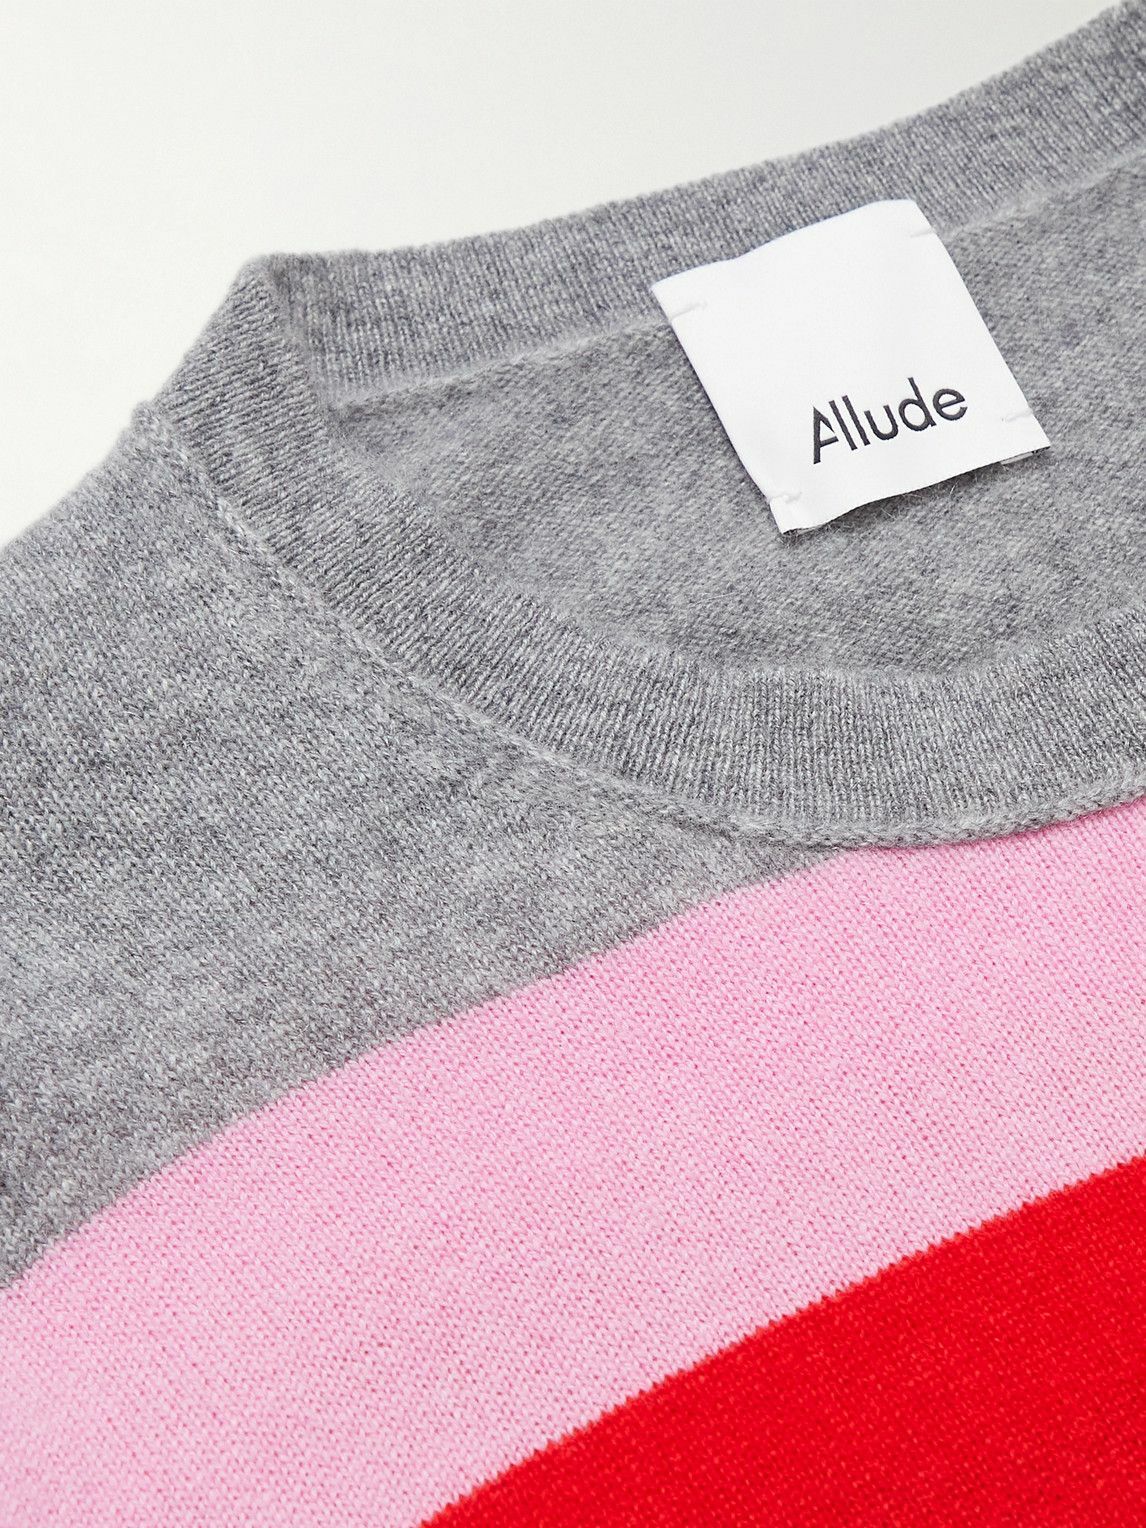 Allude - Striped Cashmere Sweater - Multi